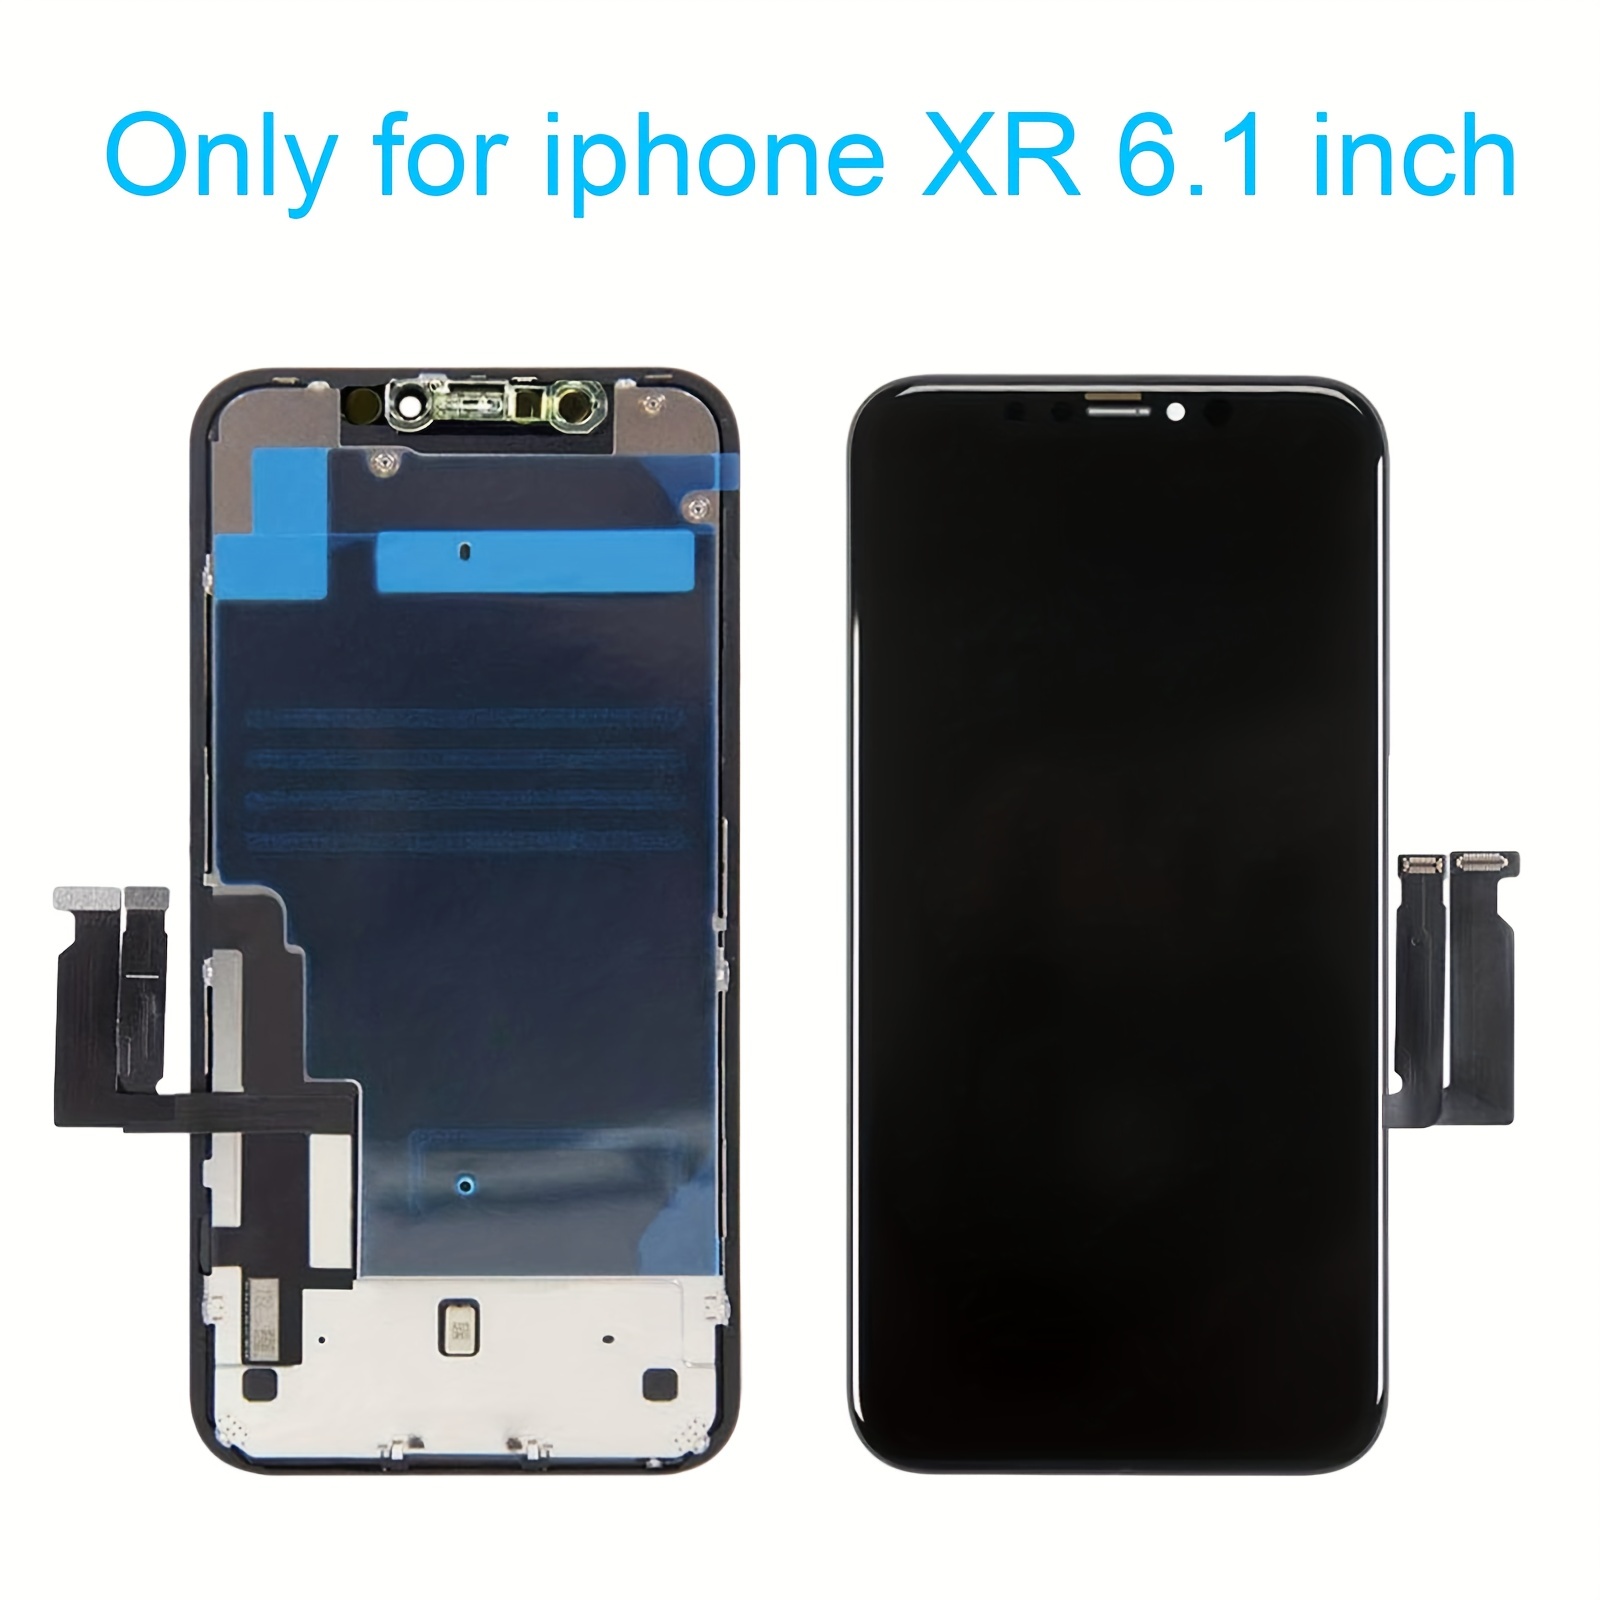 Reparar pantalla de iPhone XR. ¡Repara ahora!